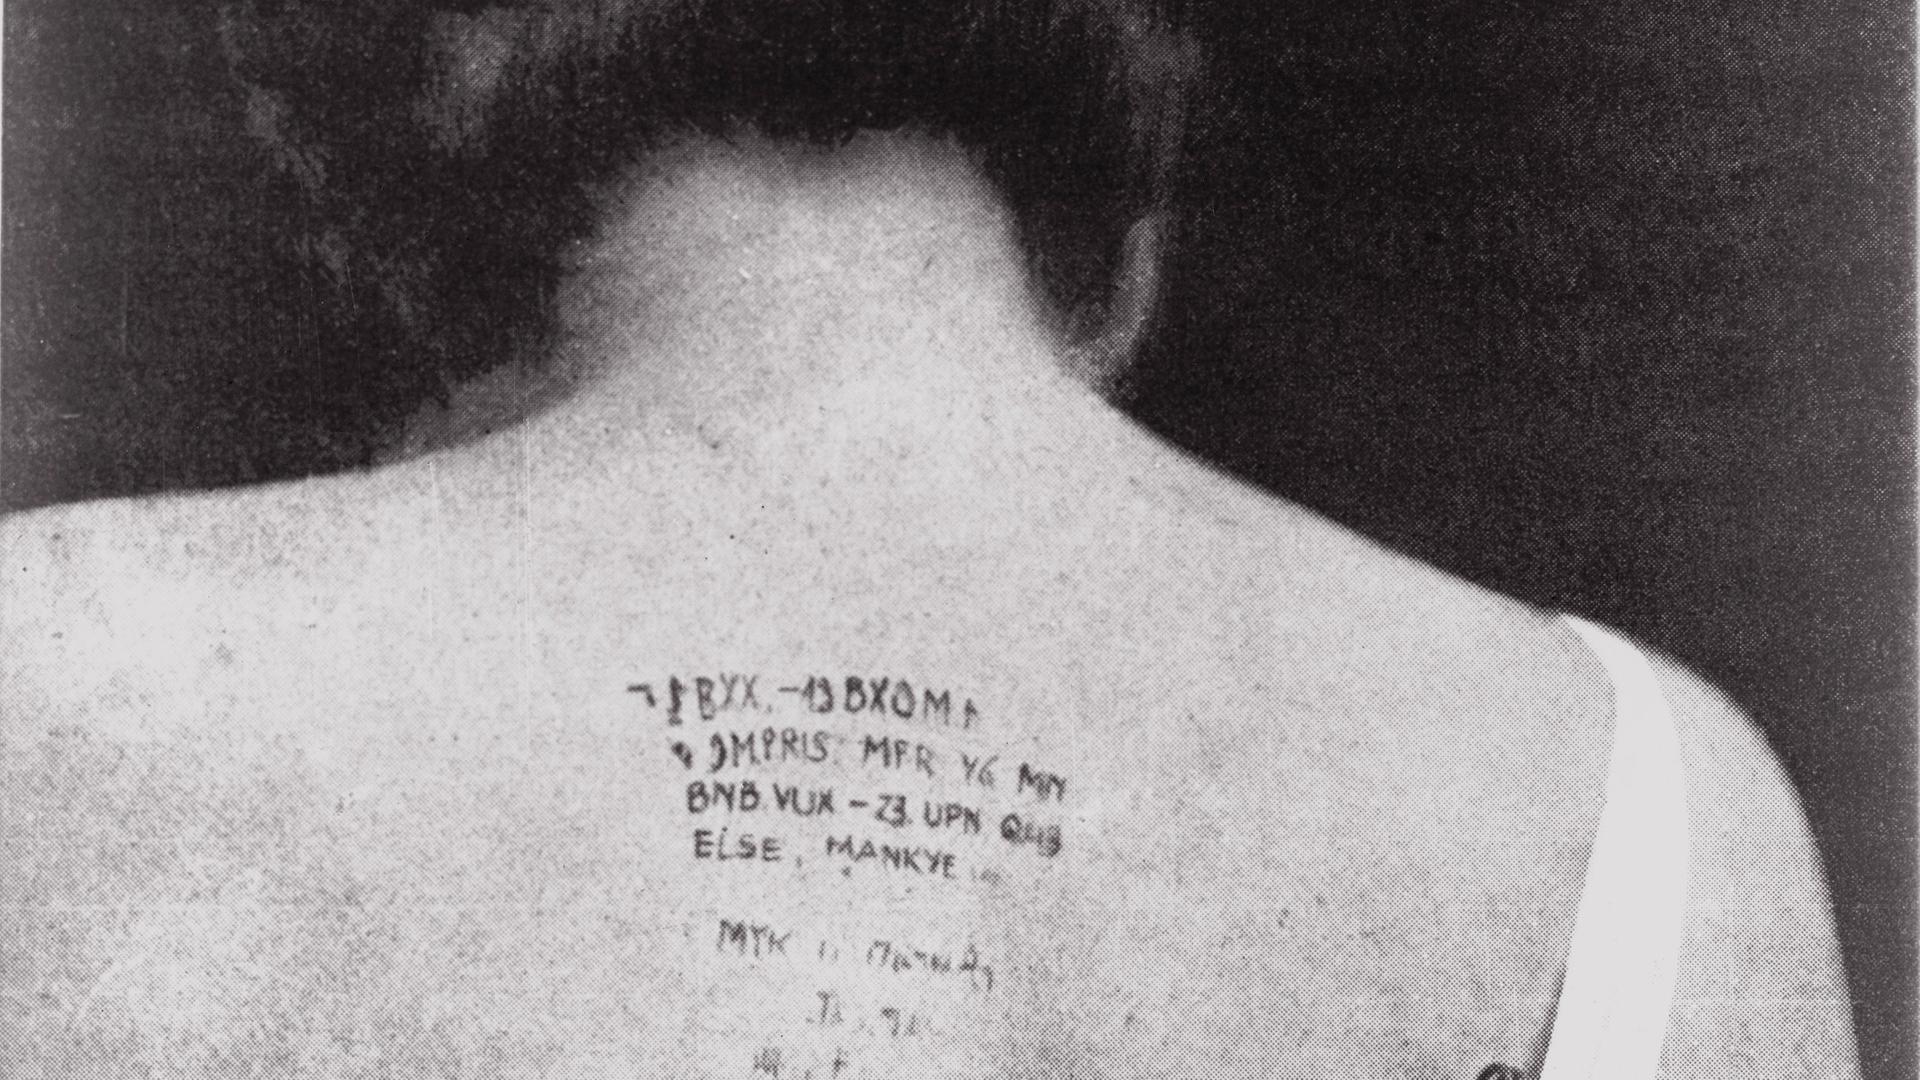 Ein historisches Foto von 1940 zeigt den Rücken einer Spionin, auf dem mit Tinte verschlüsselte Nachrichten geschrieben wurden.